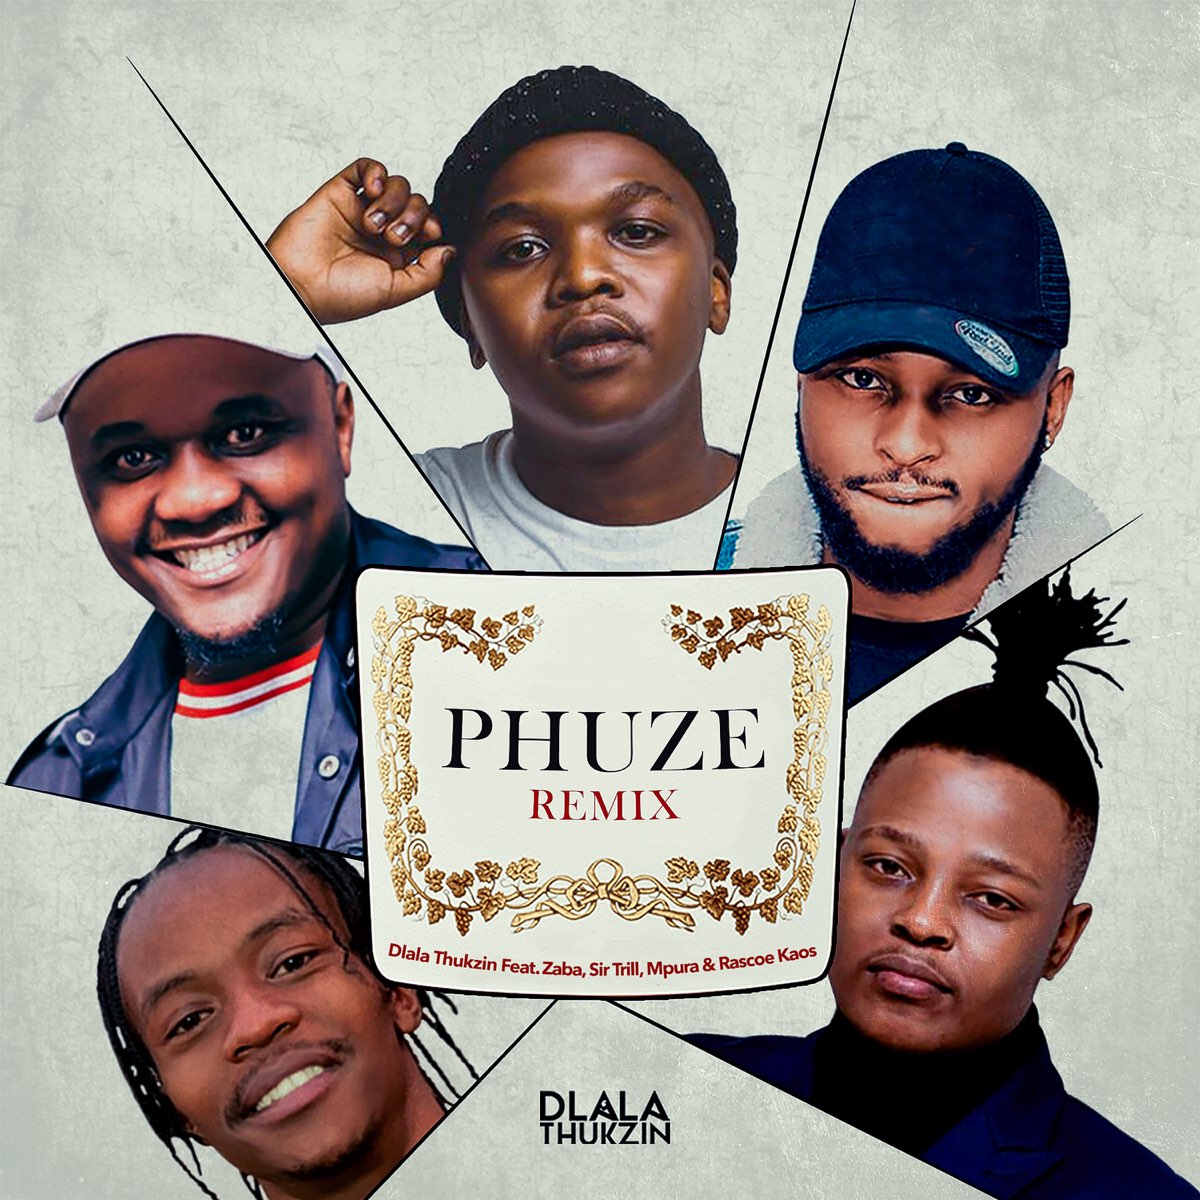 Phuze Remix (feat. Zaba, Sir Trill, Mpura & Rascoe Kaos) - Single by Dlala  Thukzin on Apple Music